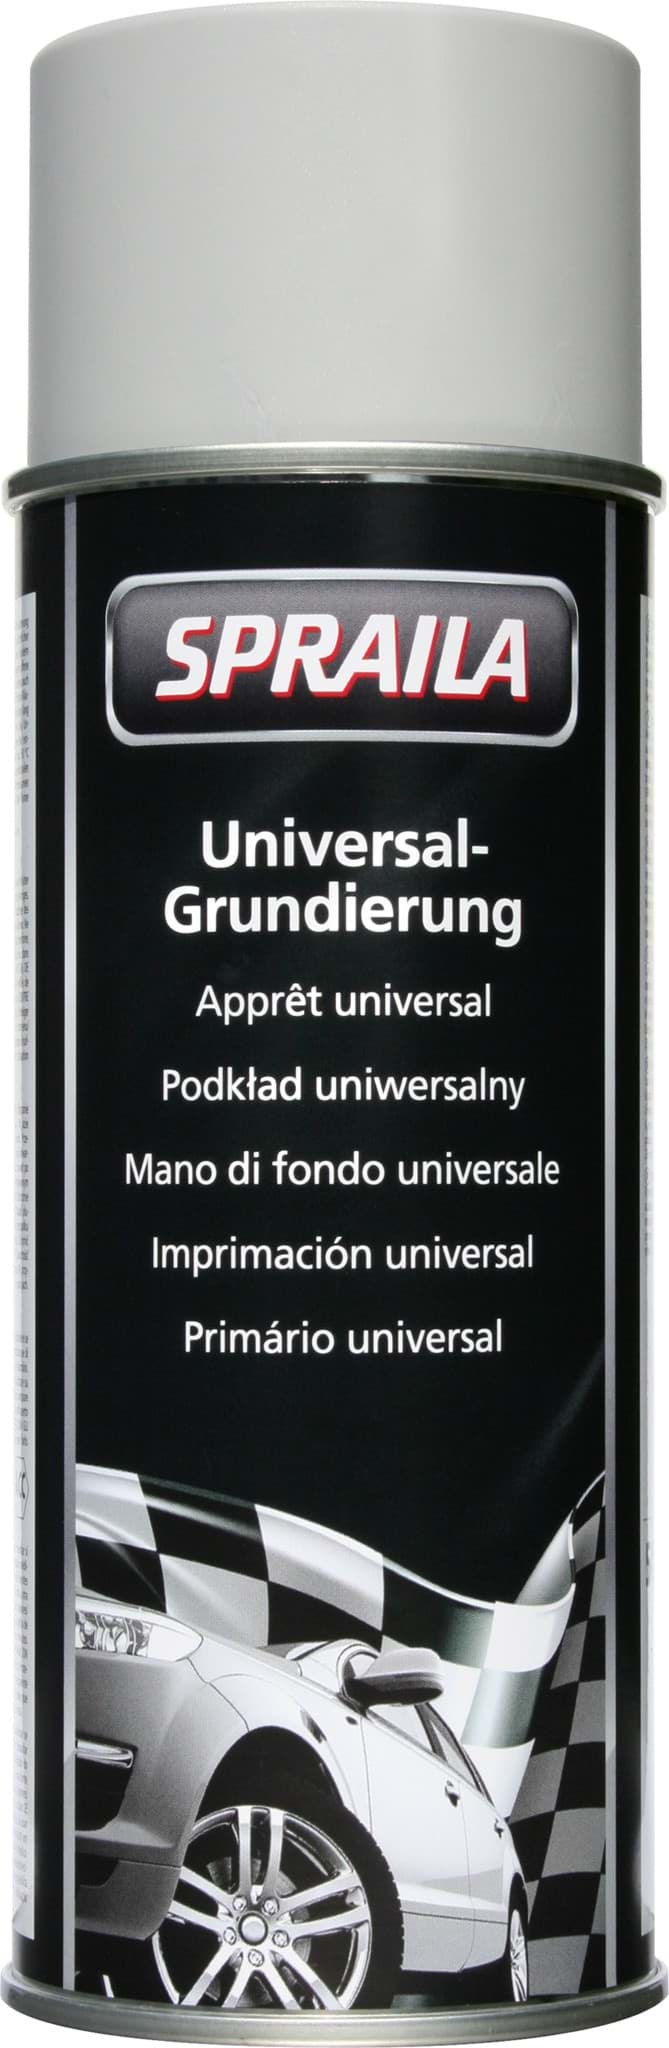 Picture of Spraila Universalgrundierung Grau 400ml  K300001  